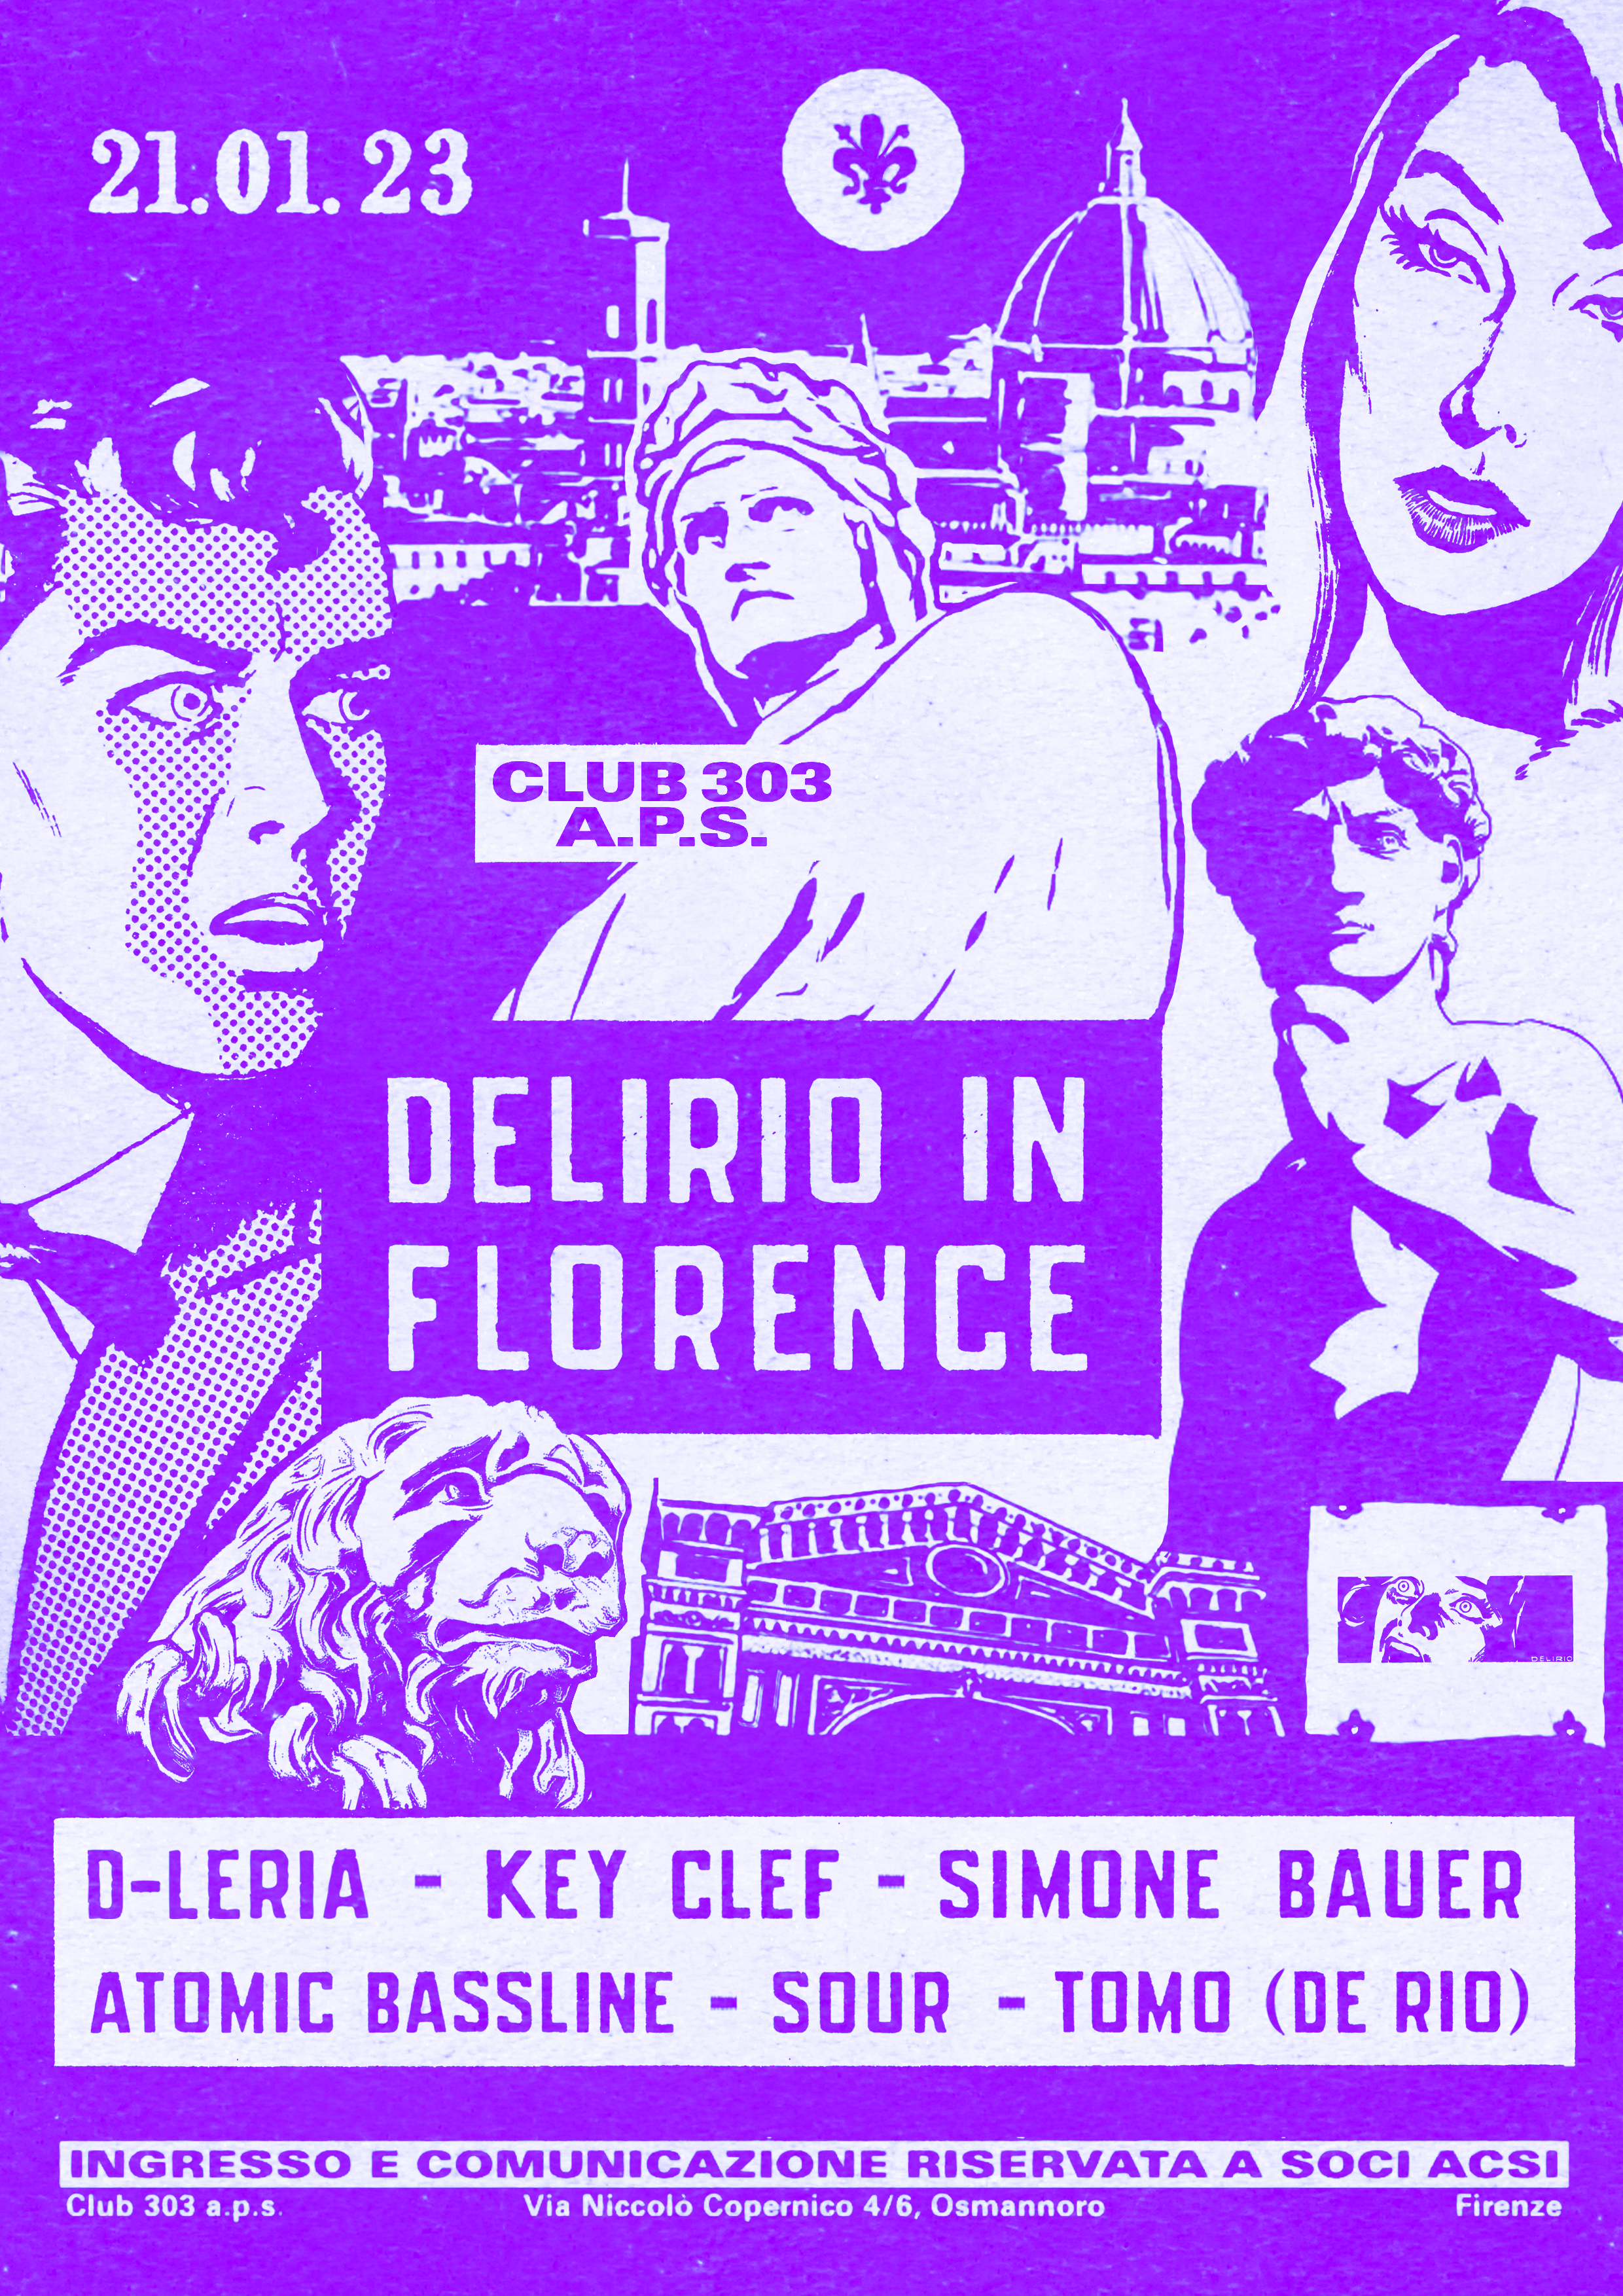 DELIRIO IN FLORENCE - Página frontal